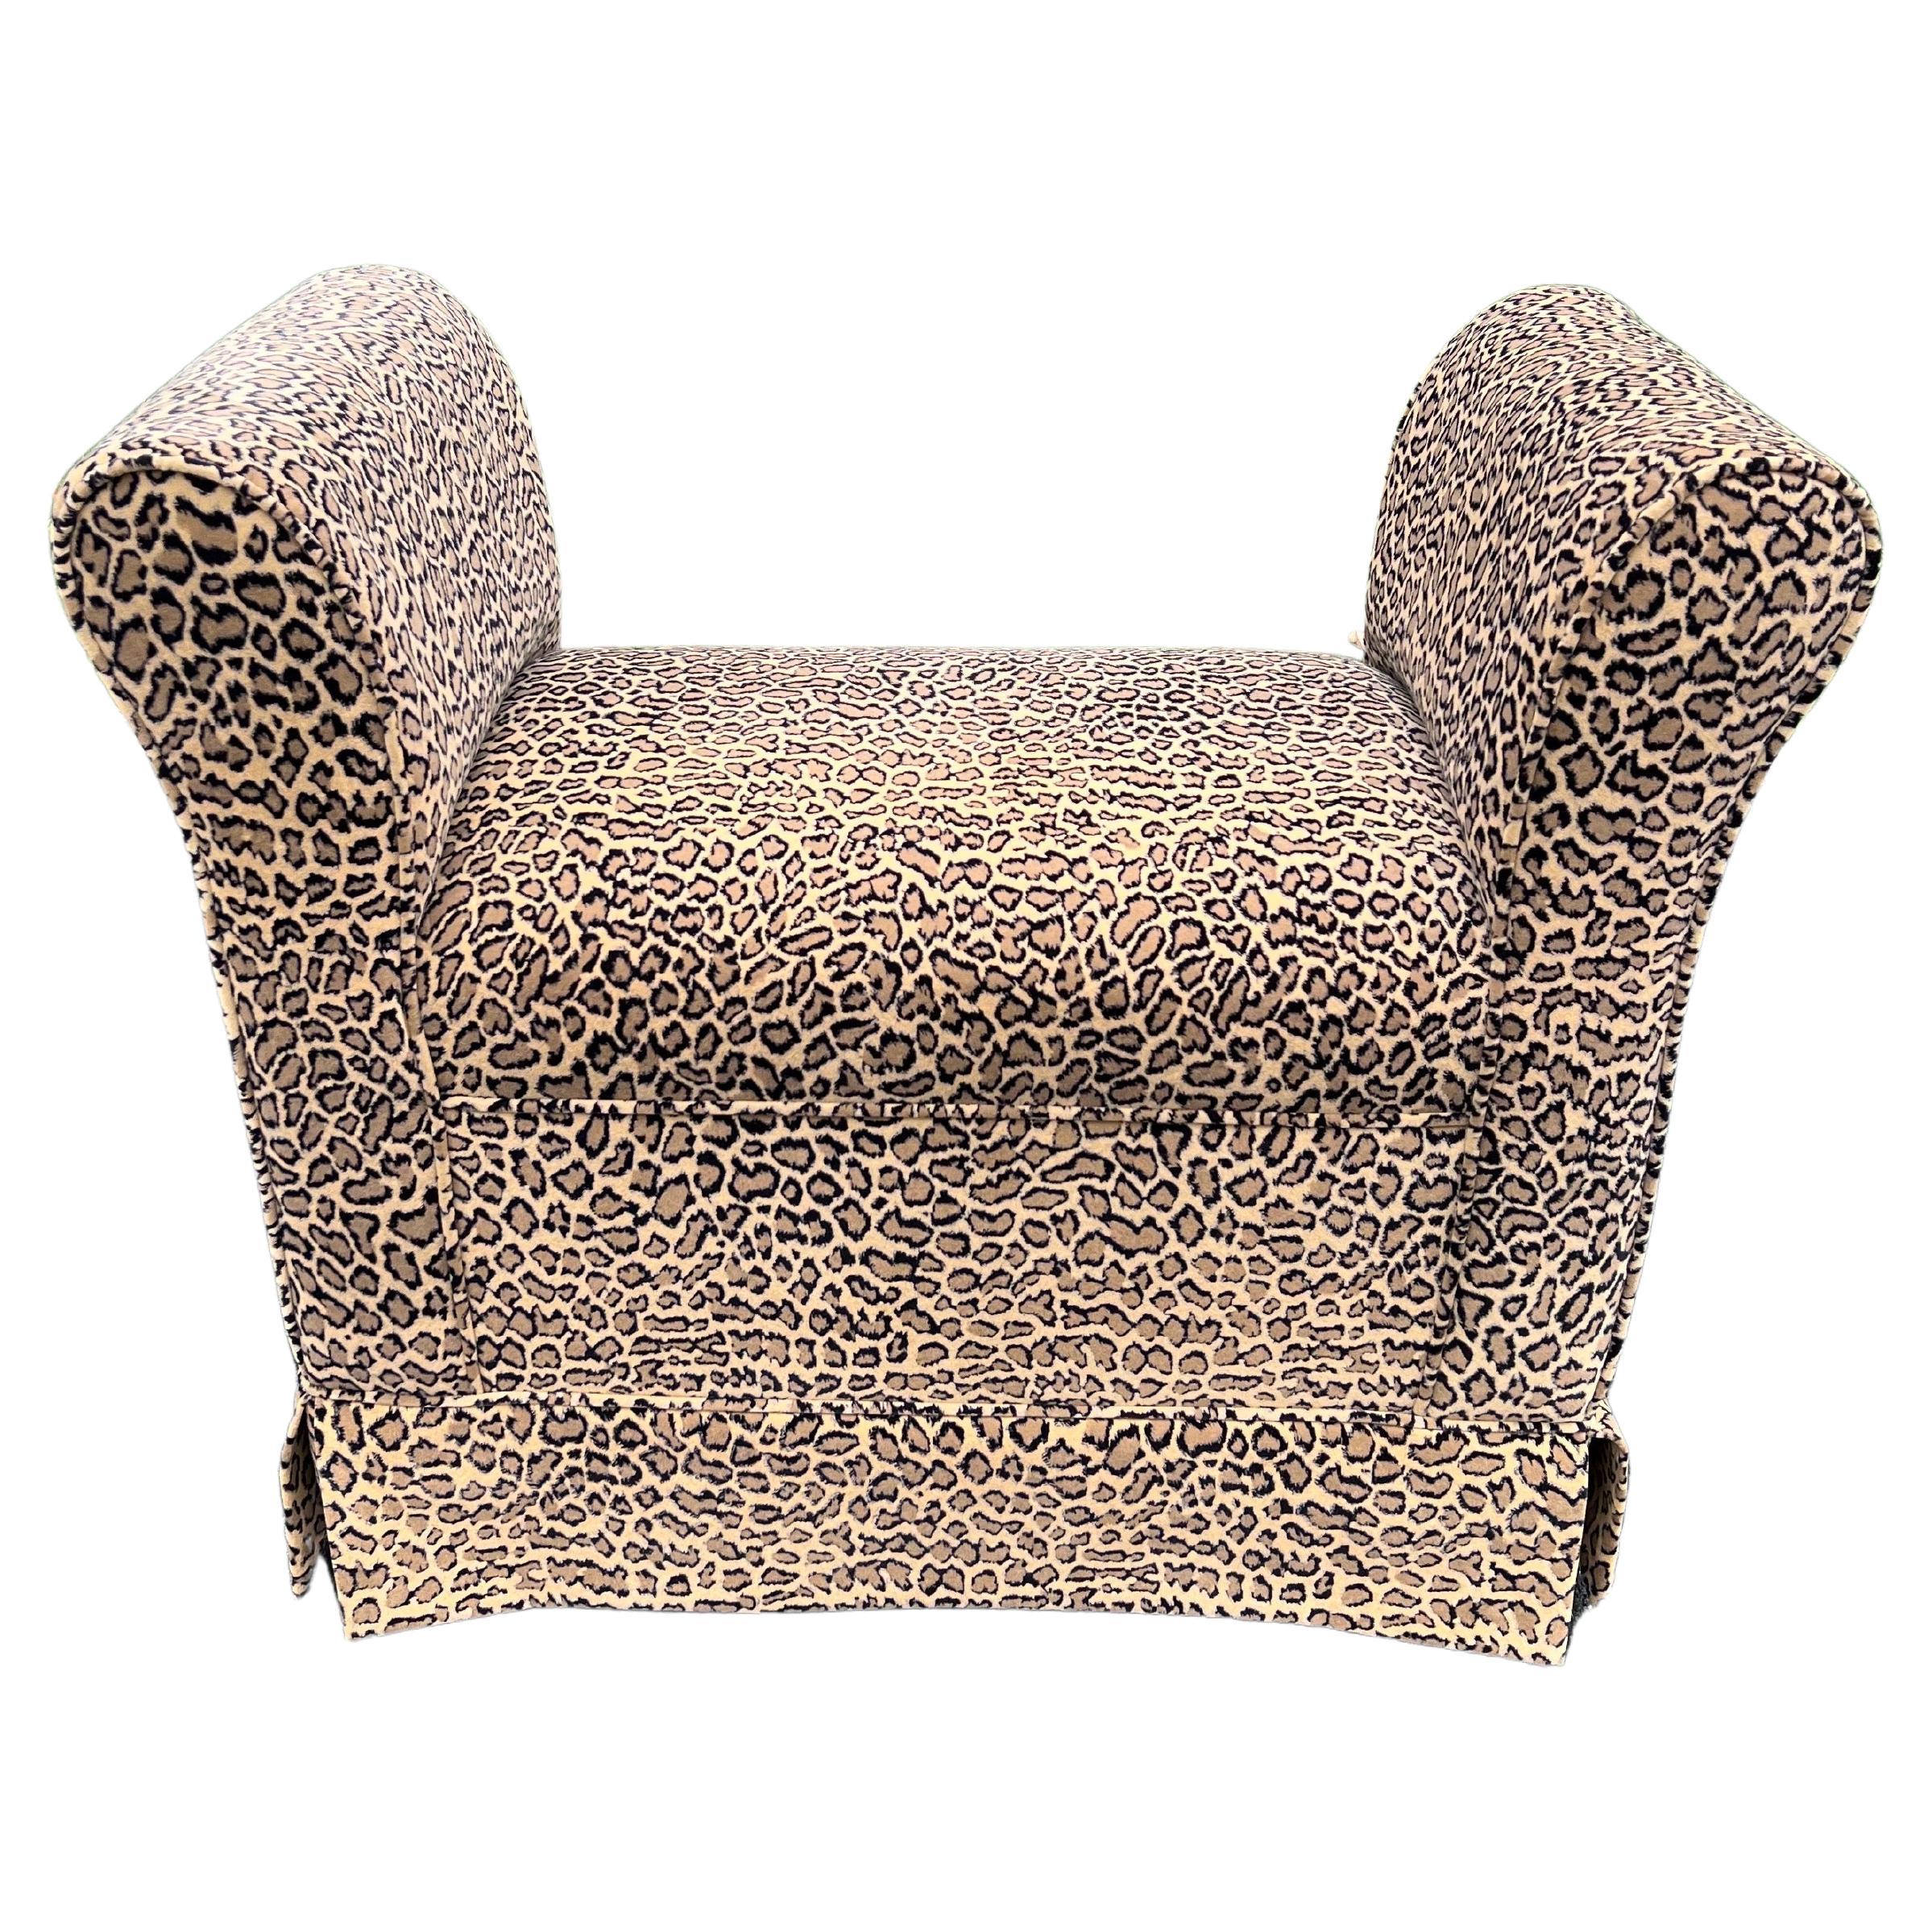 Leopard Patterned Upholstered Bench For Sale